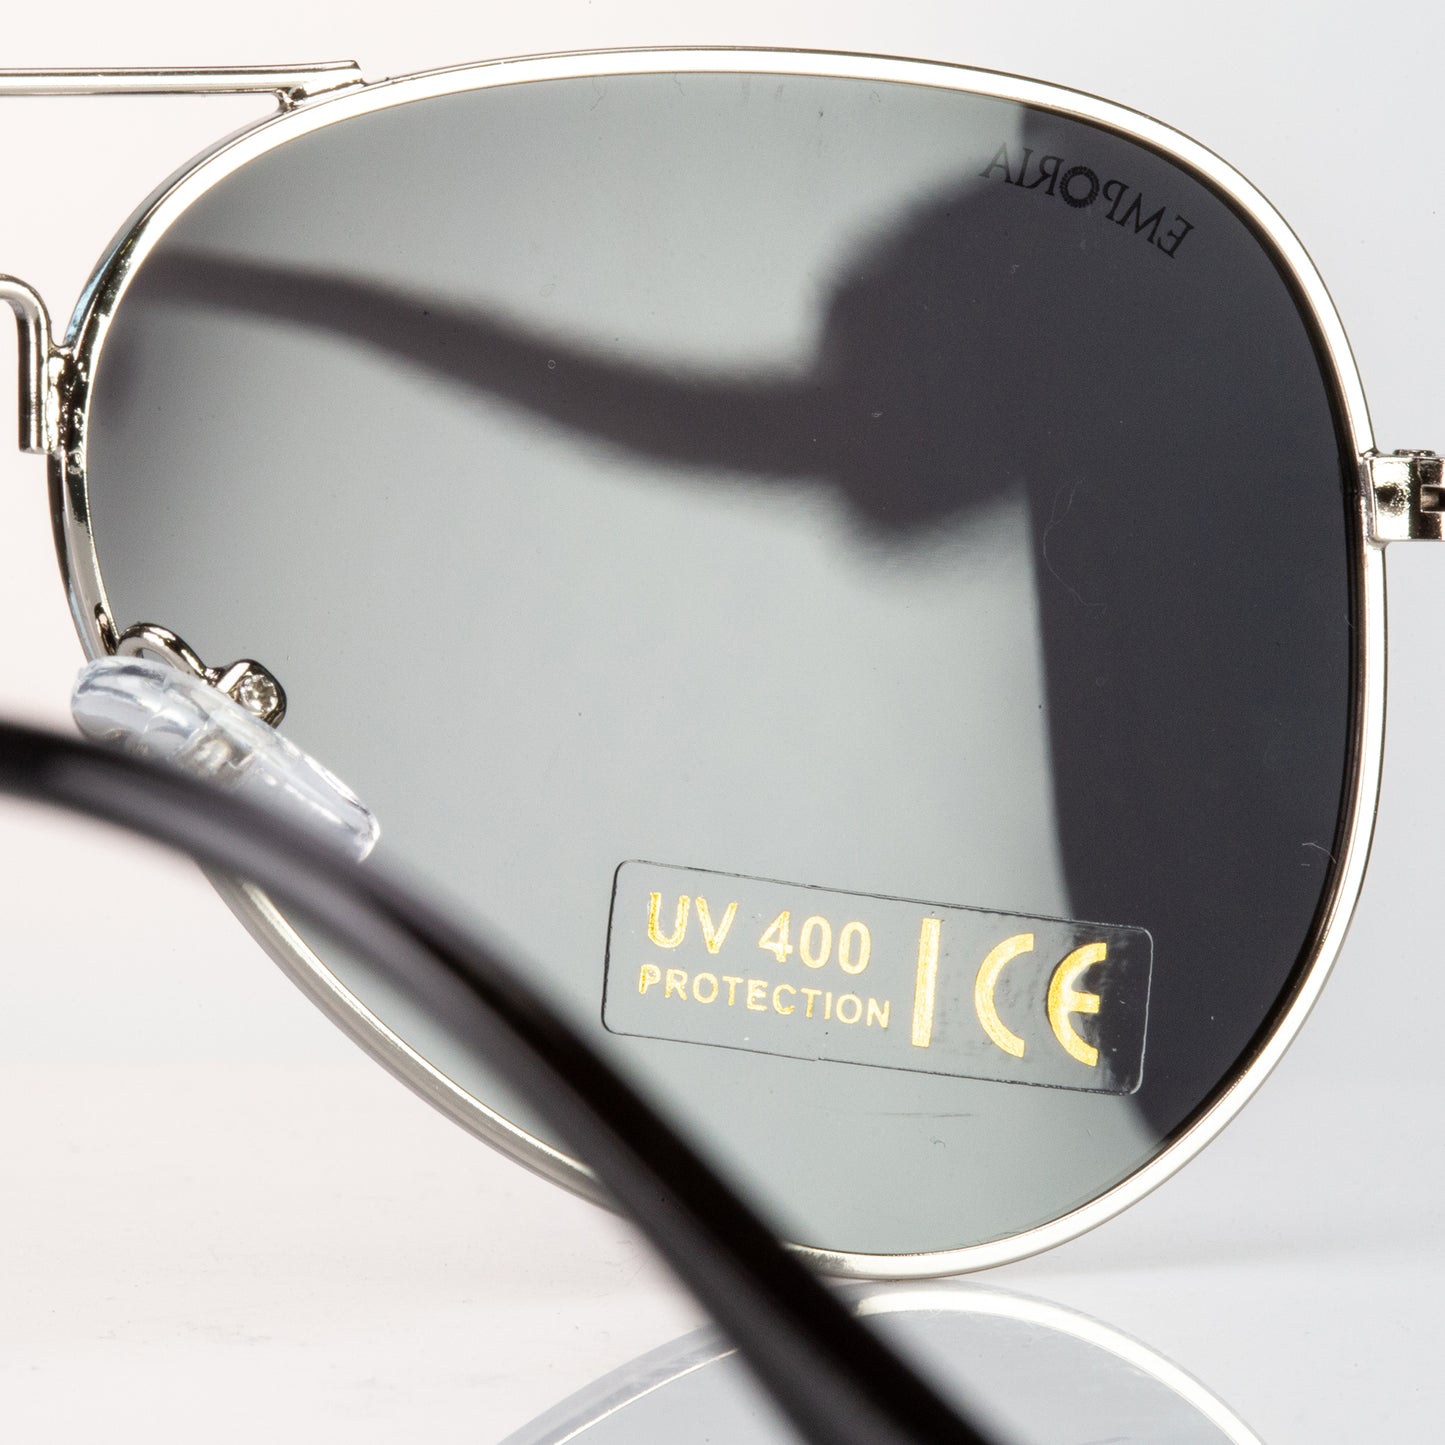 Emporia Italy - série Aviator "ŠÉF", polarizované sluneční brýle s UV filtrem, s pevným pouzdrem a čisticím hadříkem, tmavě šedé čočky, obroučky stříbrné barvy